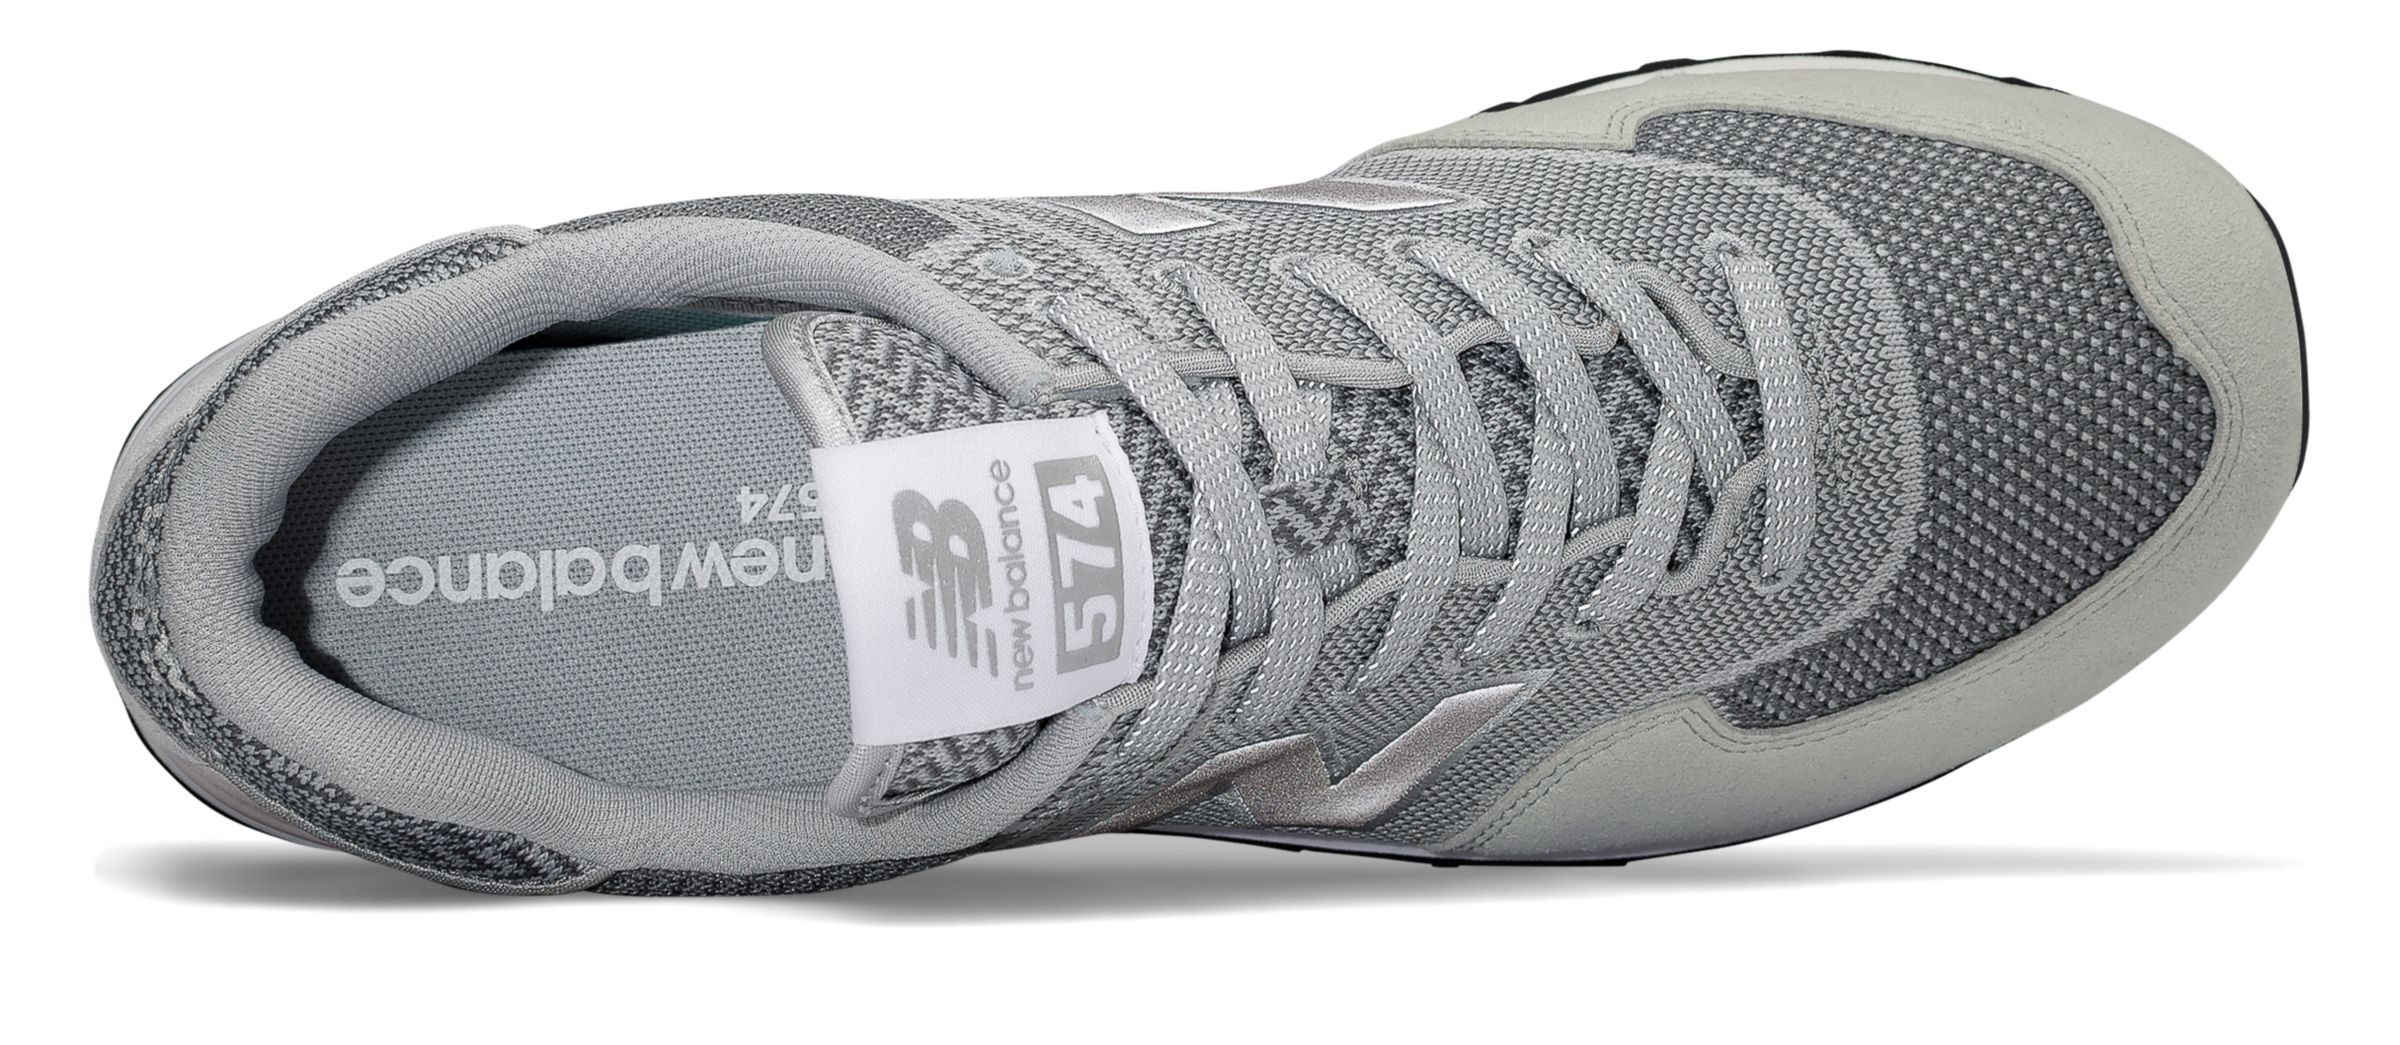 574 engineered mesh sneaker new balance